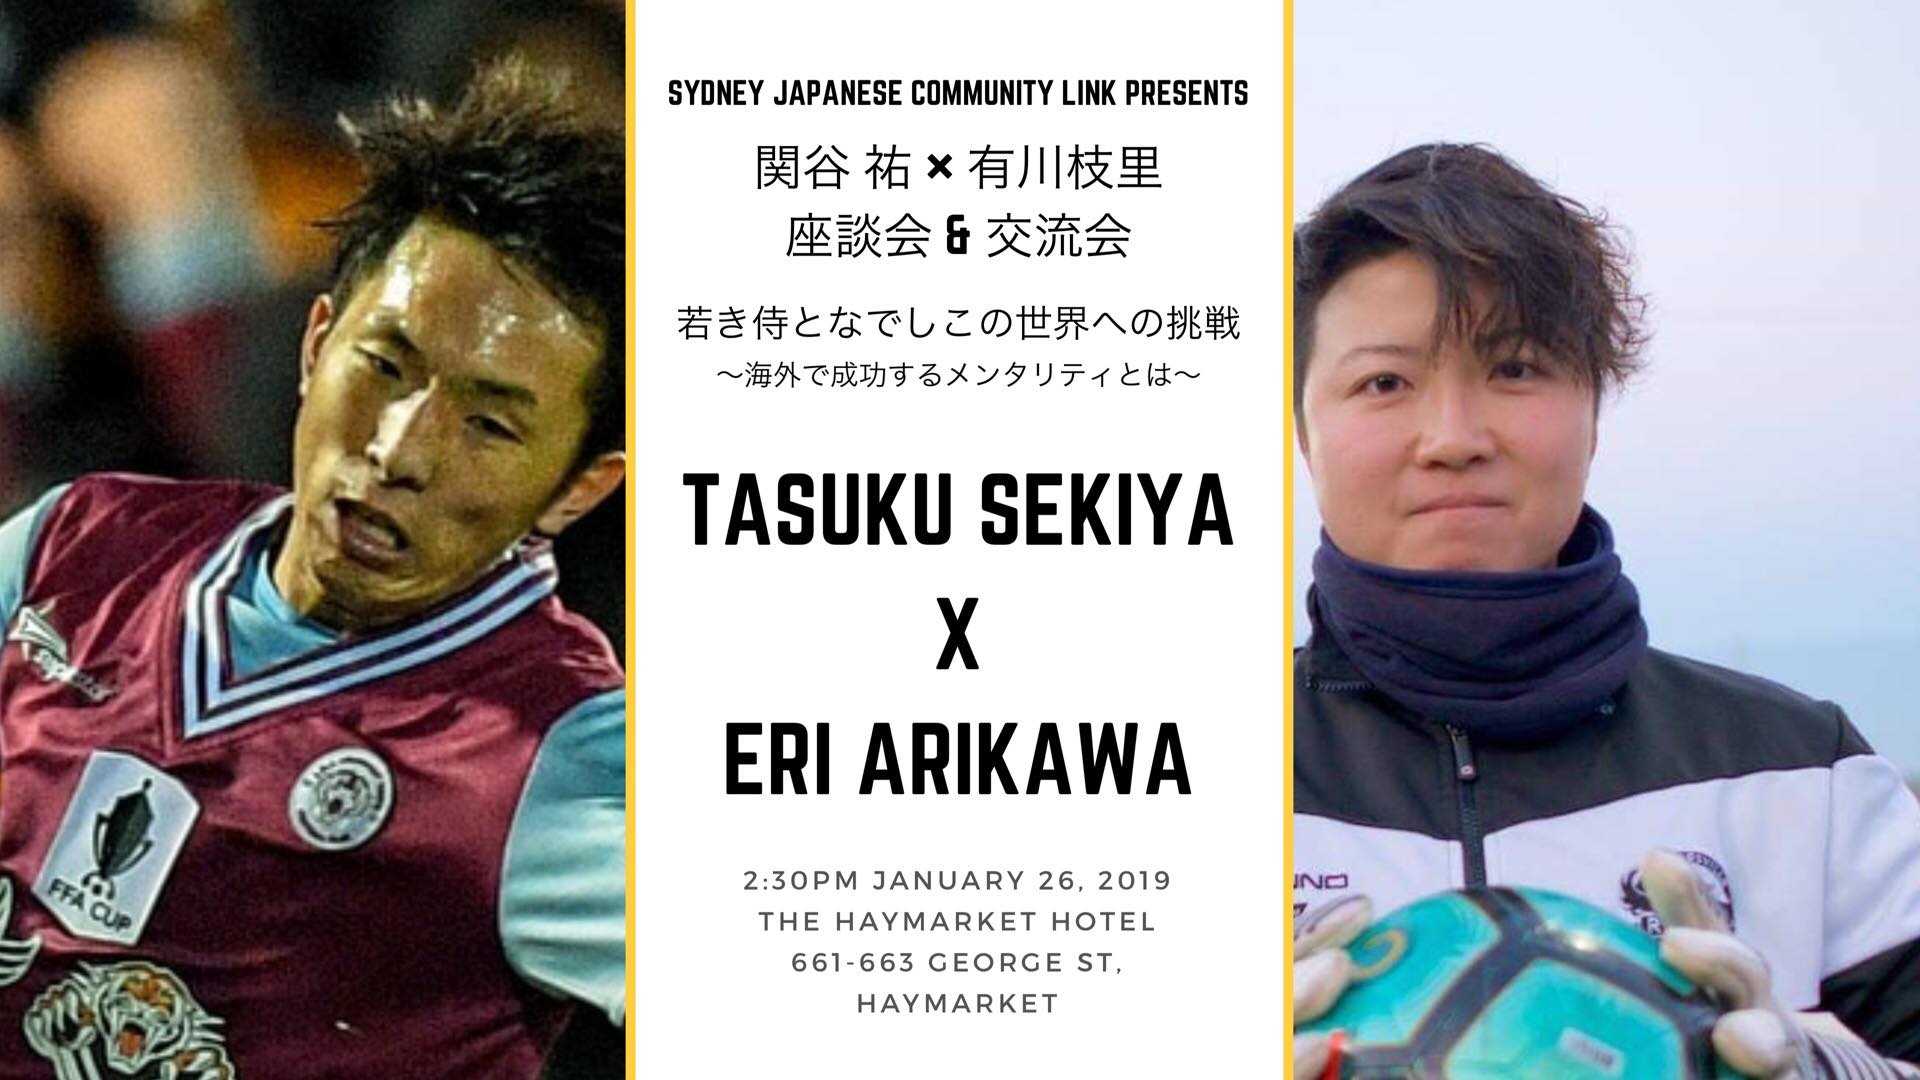 明日開催 オーストラリアで活躍中の日本人サッカー選手による座談会 交流会 Jams Tv オーストラリア生活情報ウェブサイト